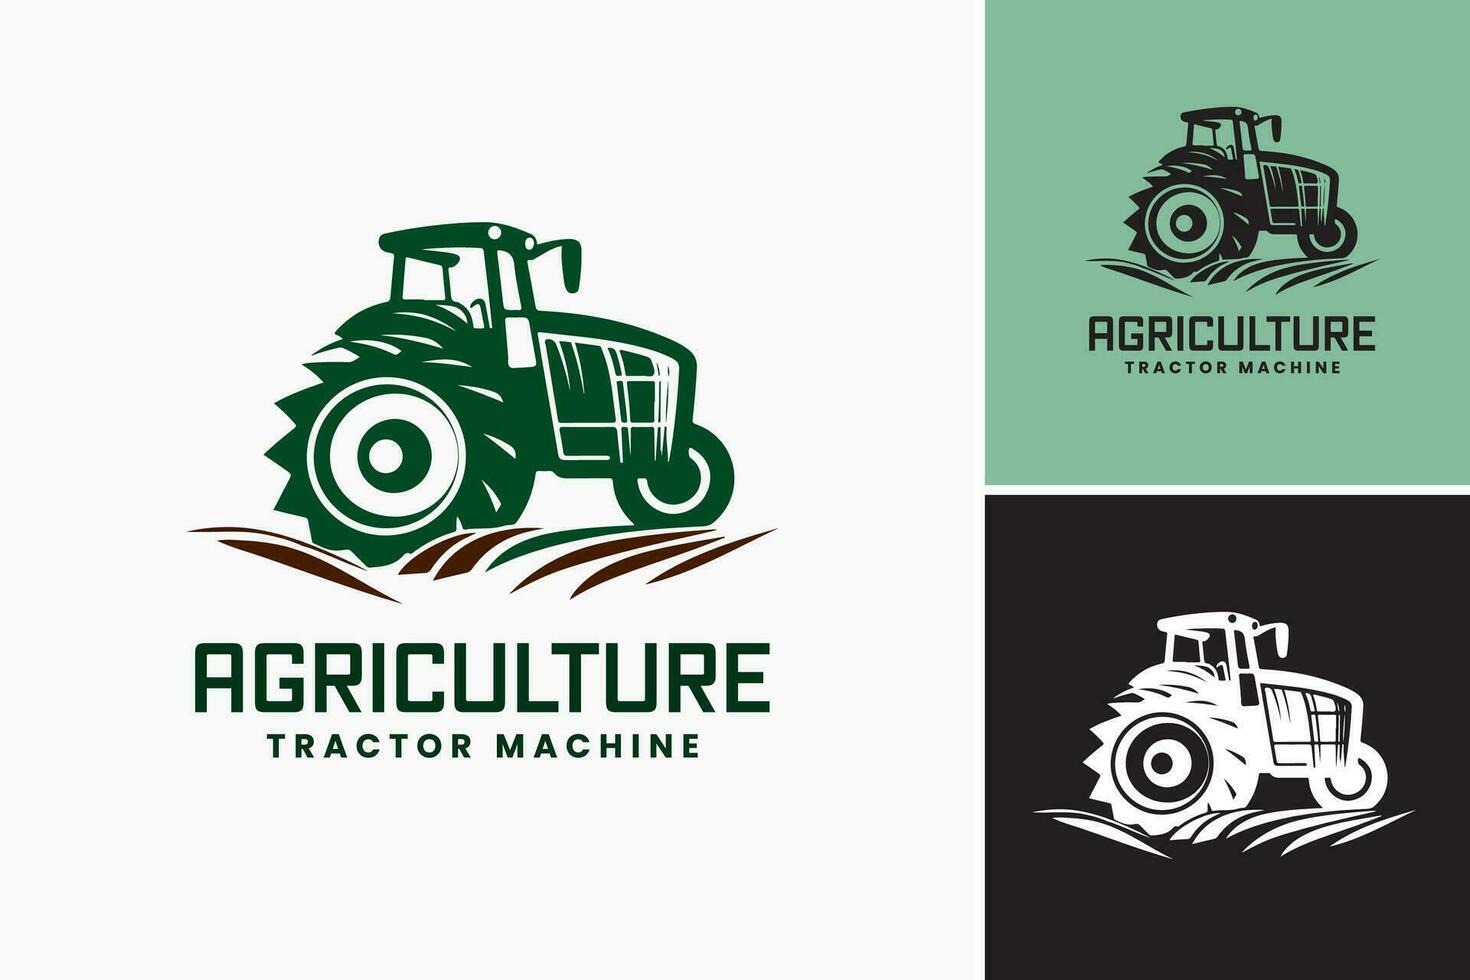 un logo presentando un tractor con el palabras agricultura tractor máquina. adecuado para agrícola negocios, granja equipo fabricantes, y agrícola suministro compañías. vector